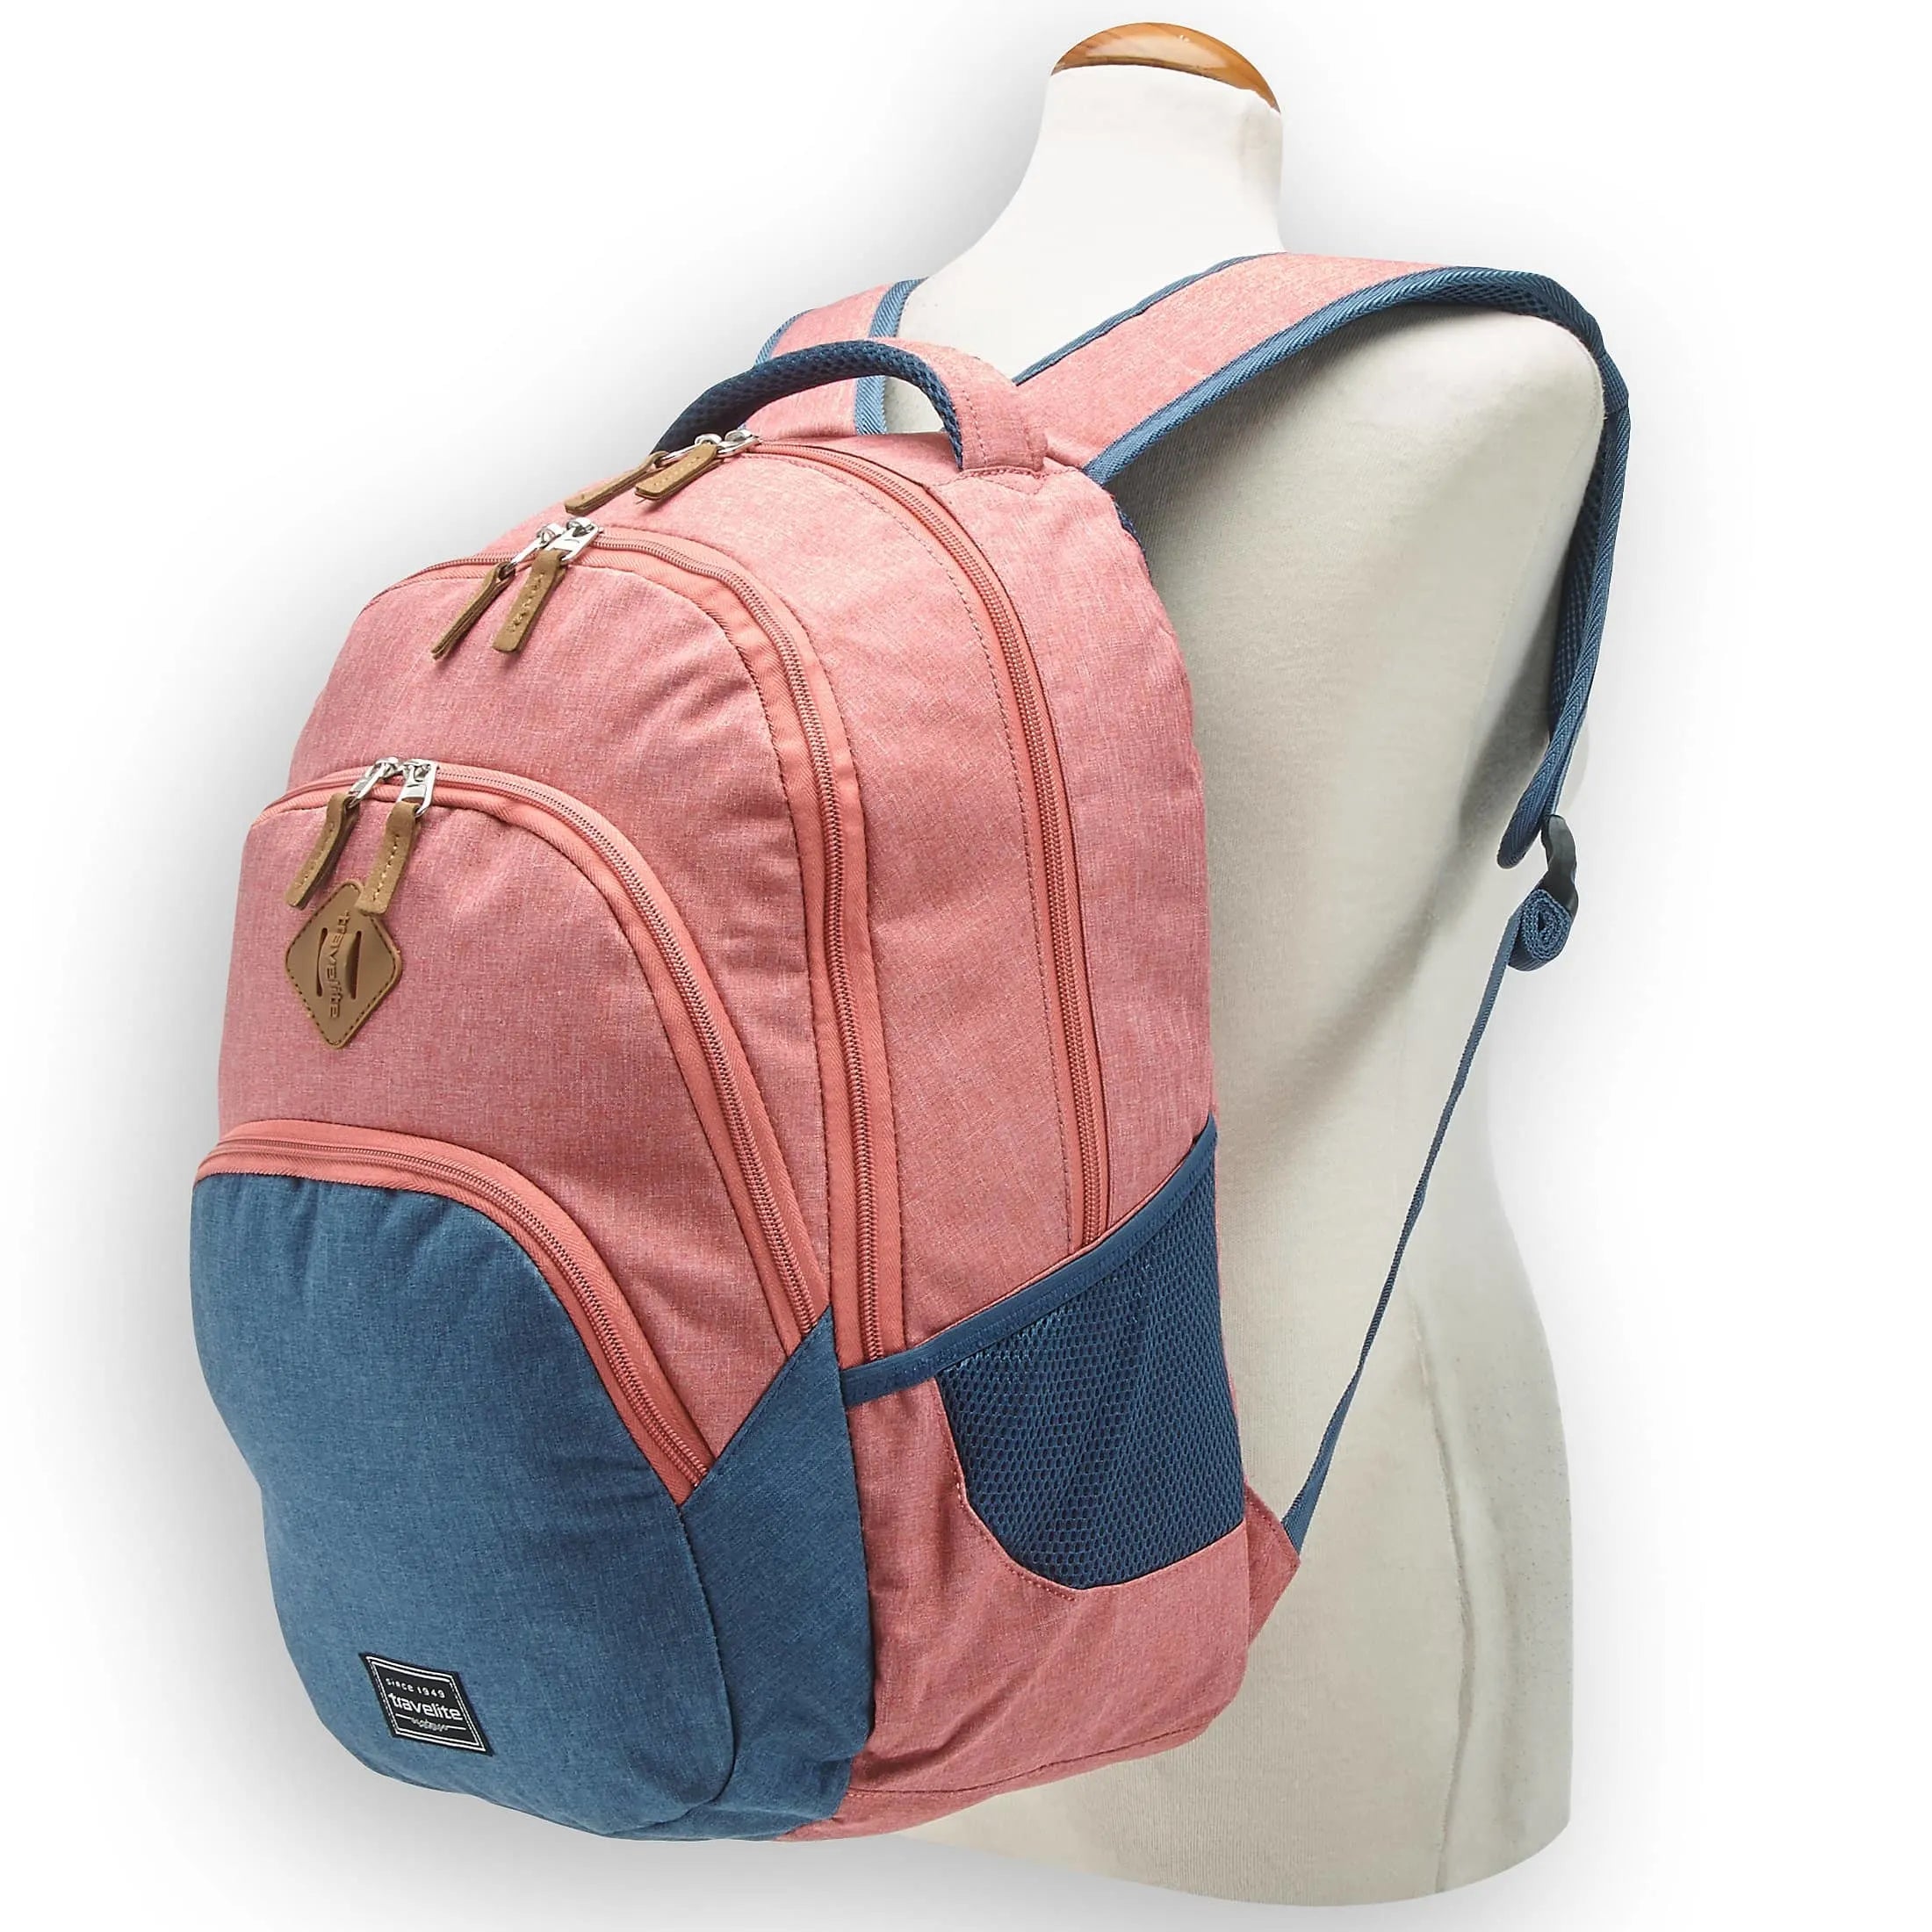 Travelite Basics Backpack Melagne 45 cm - green-grey